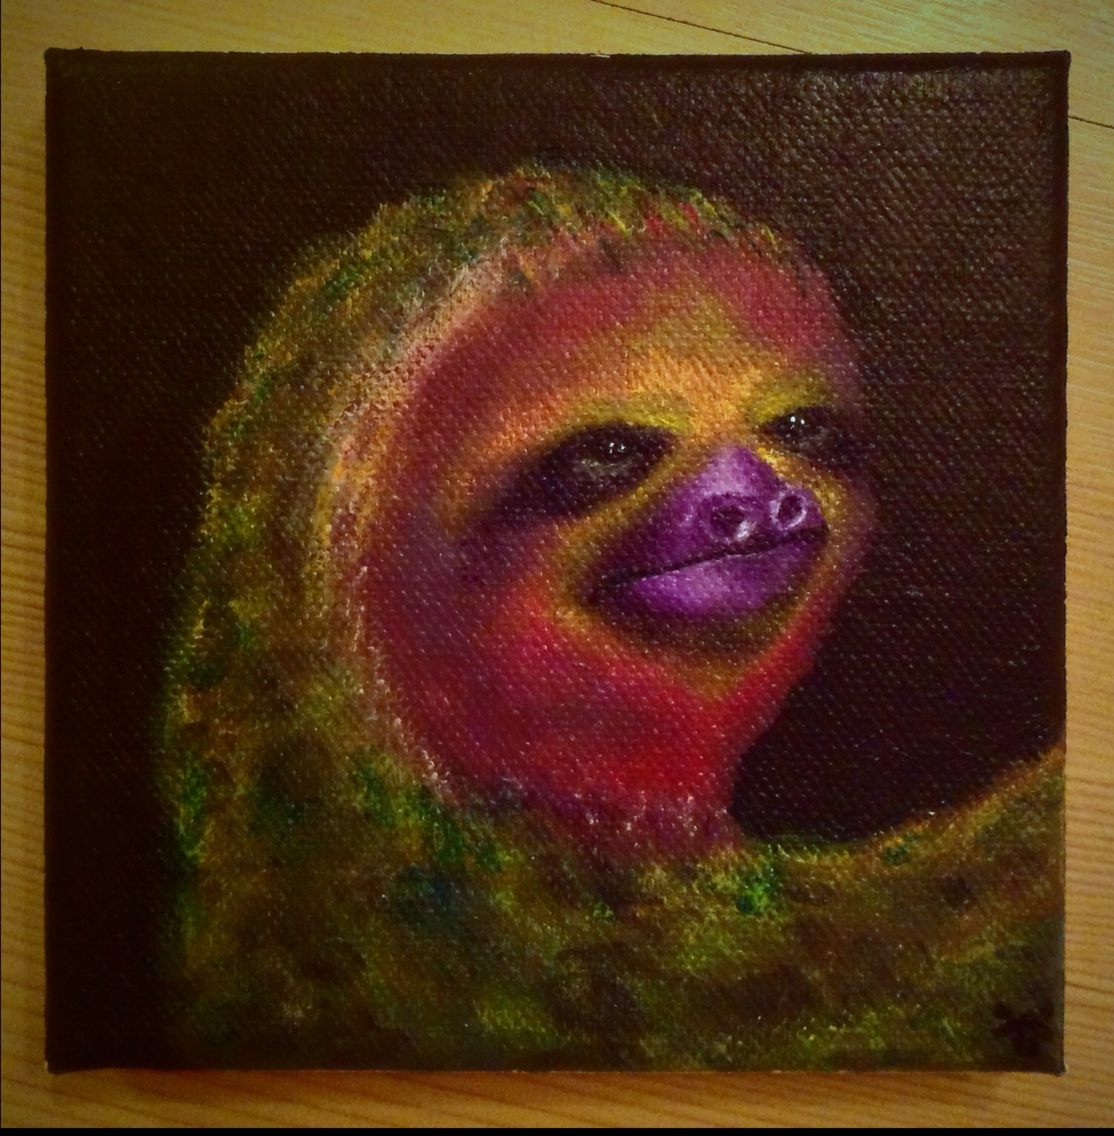 Majestic sloth multicolored